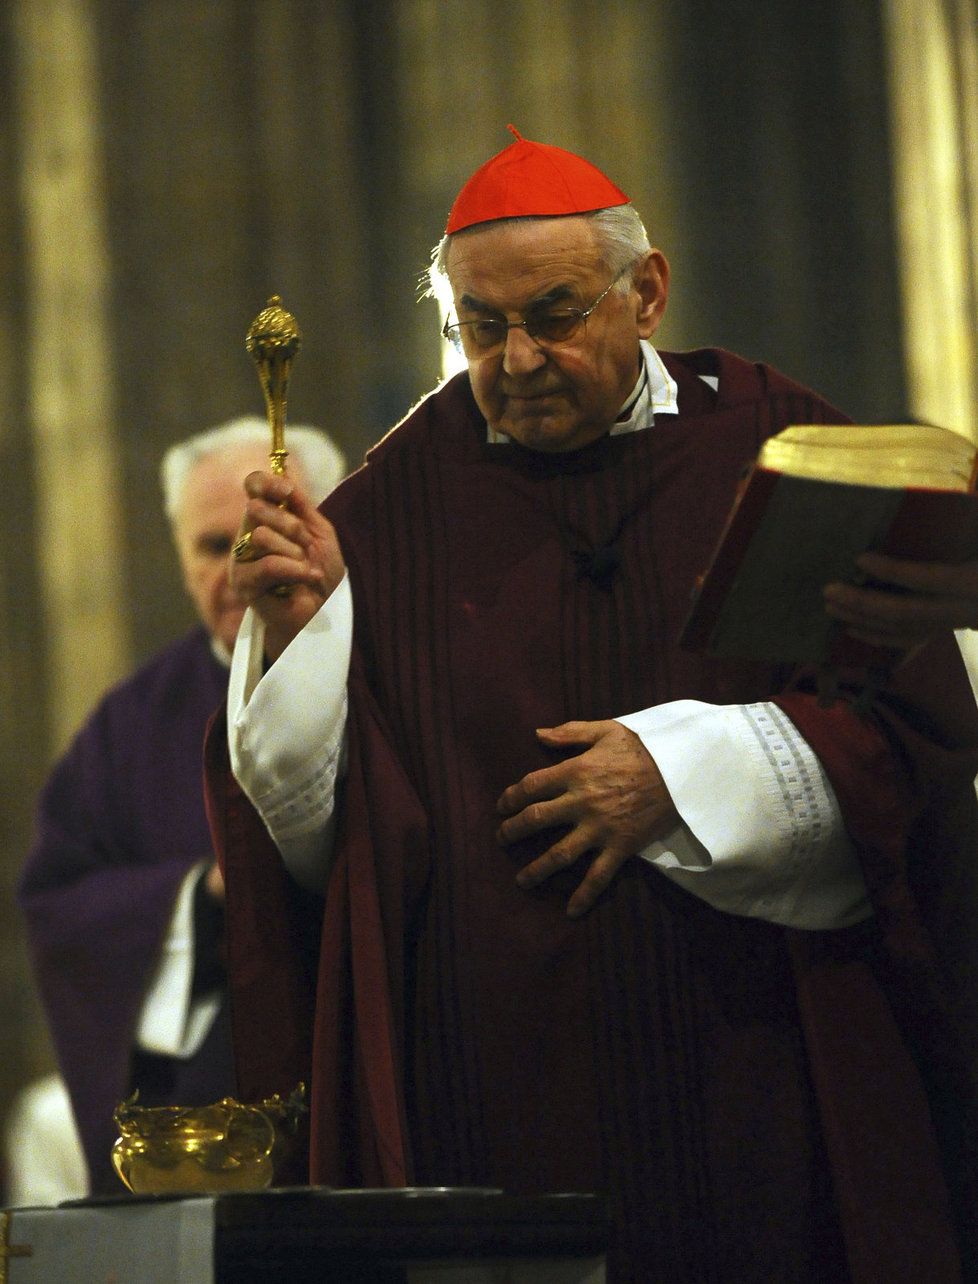 Kardinál Vlk podlehl rakovině. Z plic se rozšířila do kostí, se smrtí byl smířený.